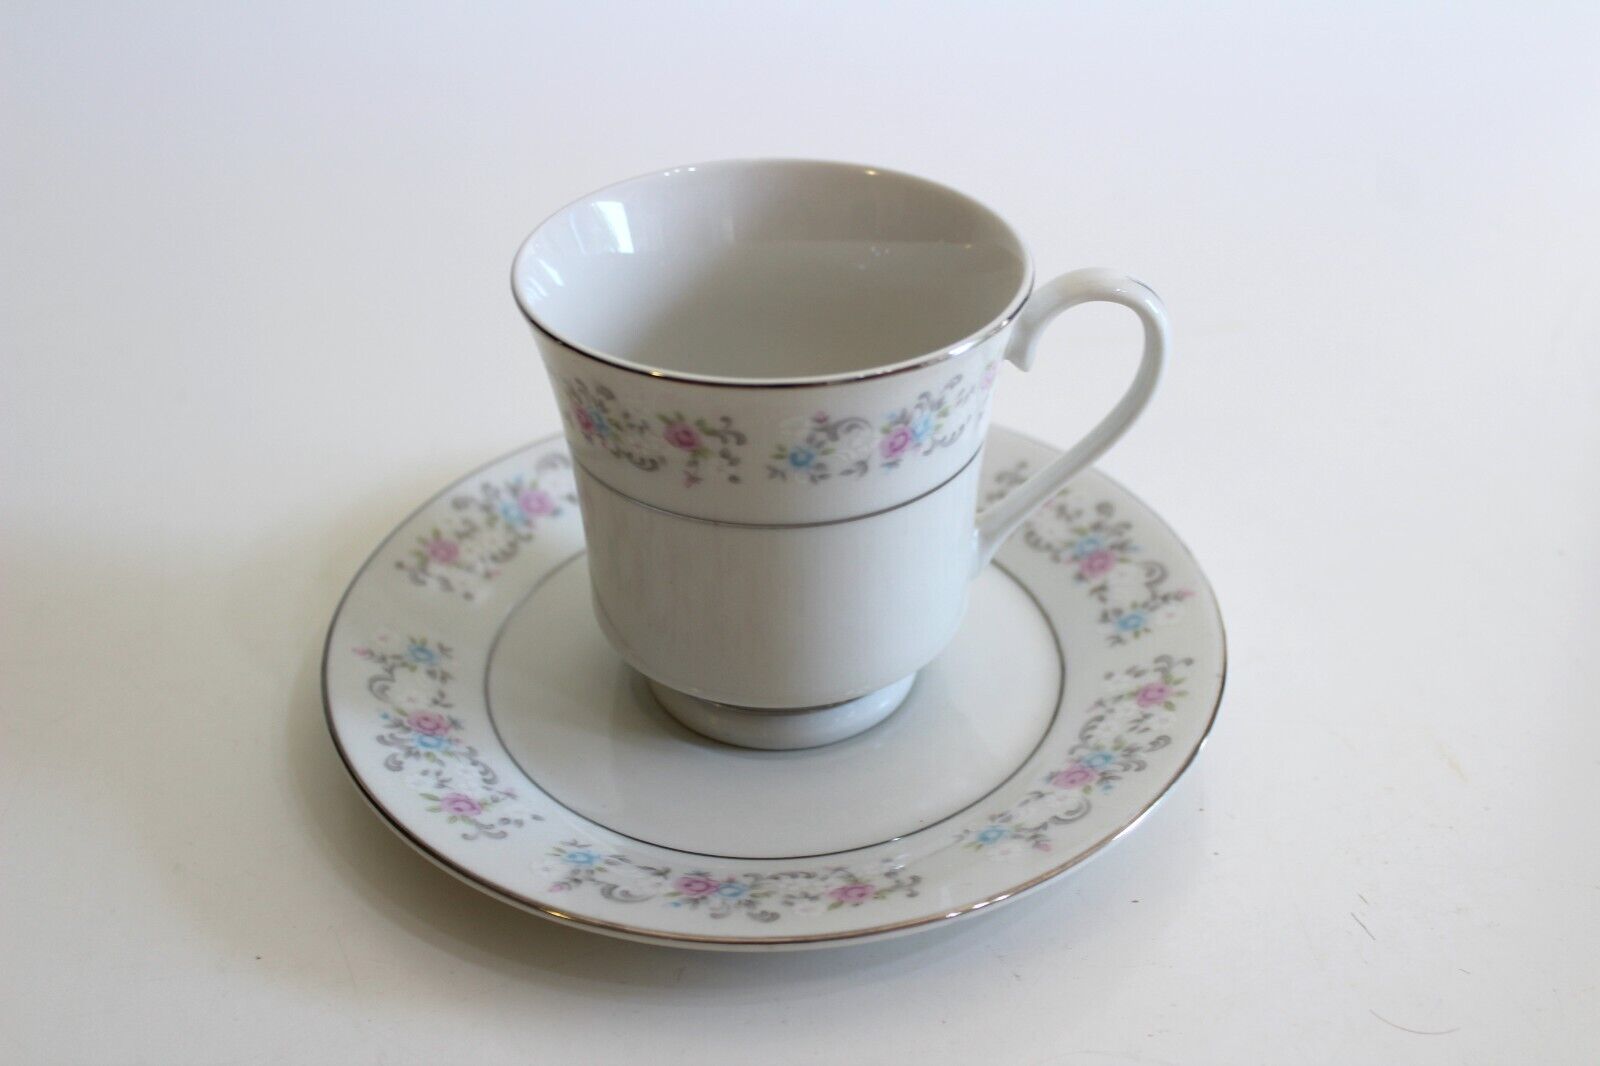 Vintage Hebei Porcelain China Teacup Saucer Set Pink Blue Roses Platinum Silver